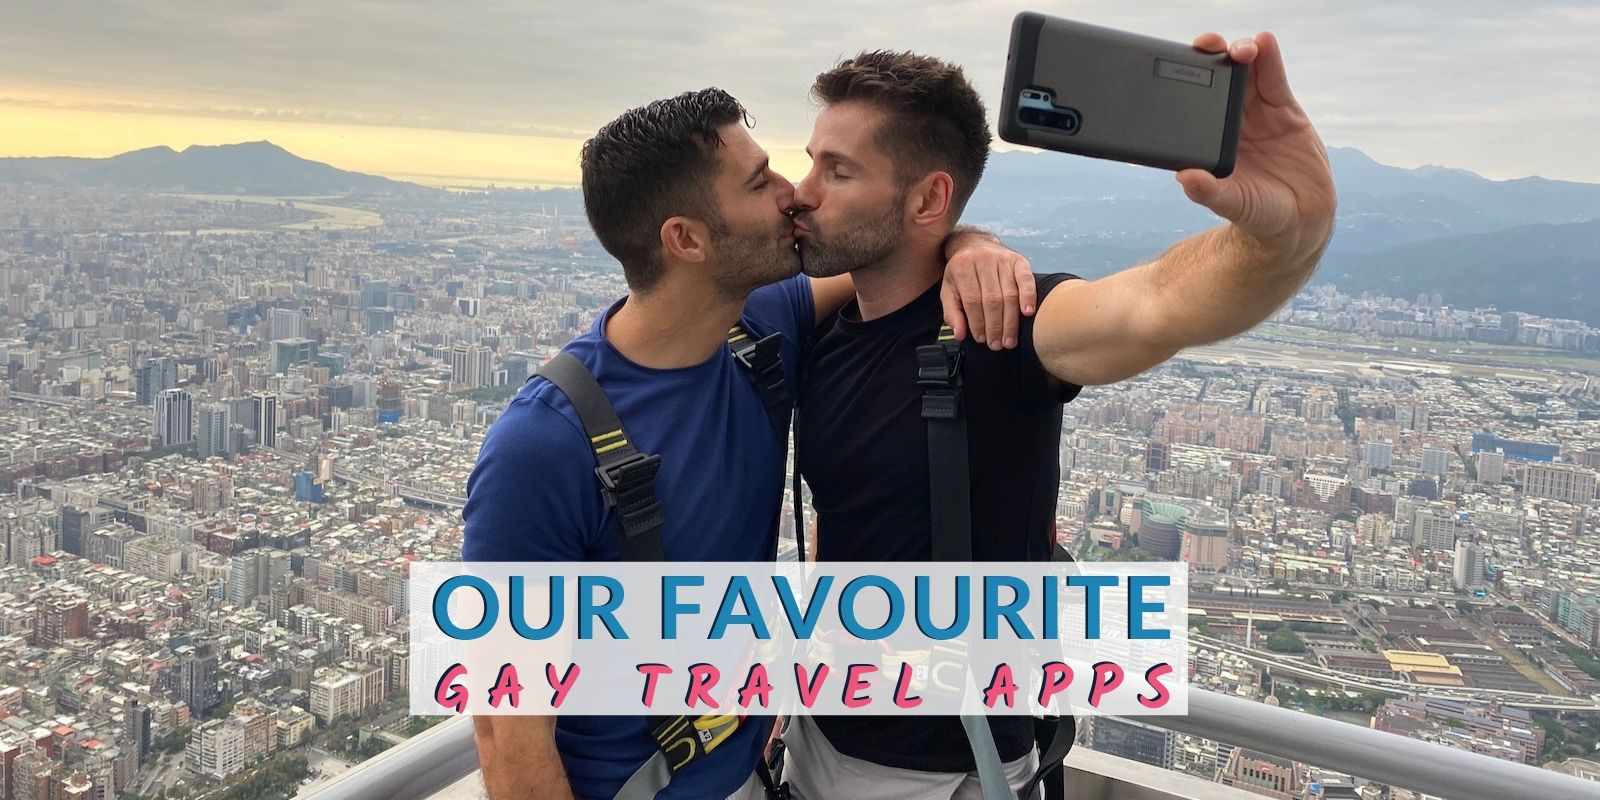 most popular gay dating apps Prague Czech Republic